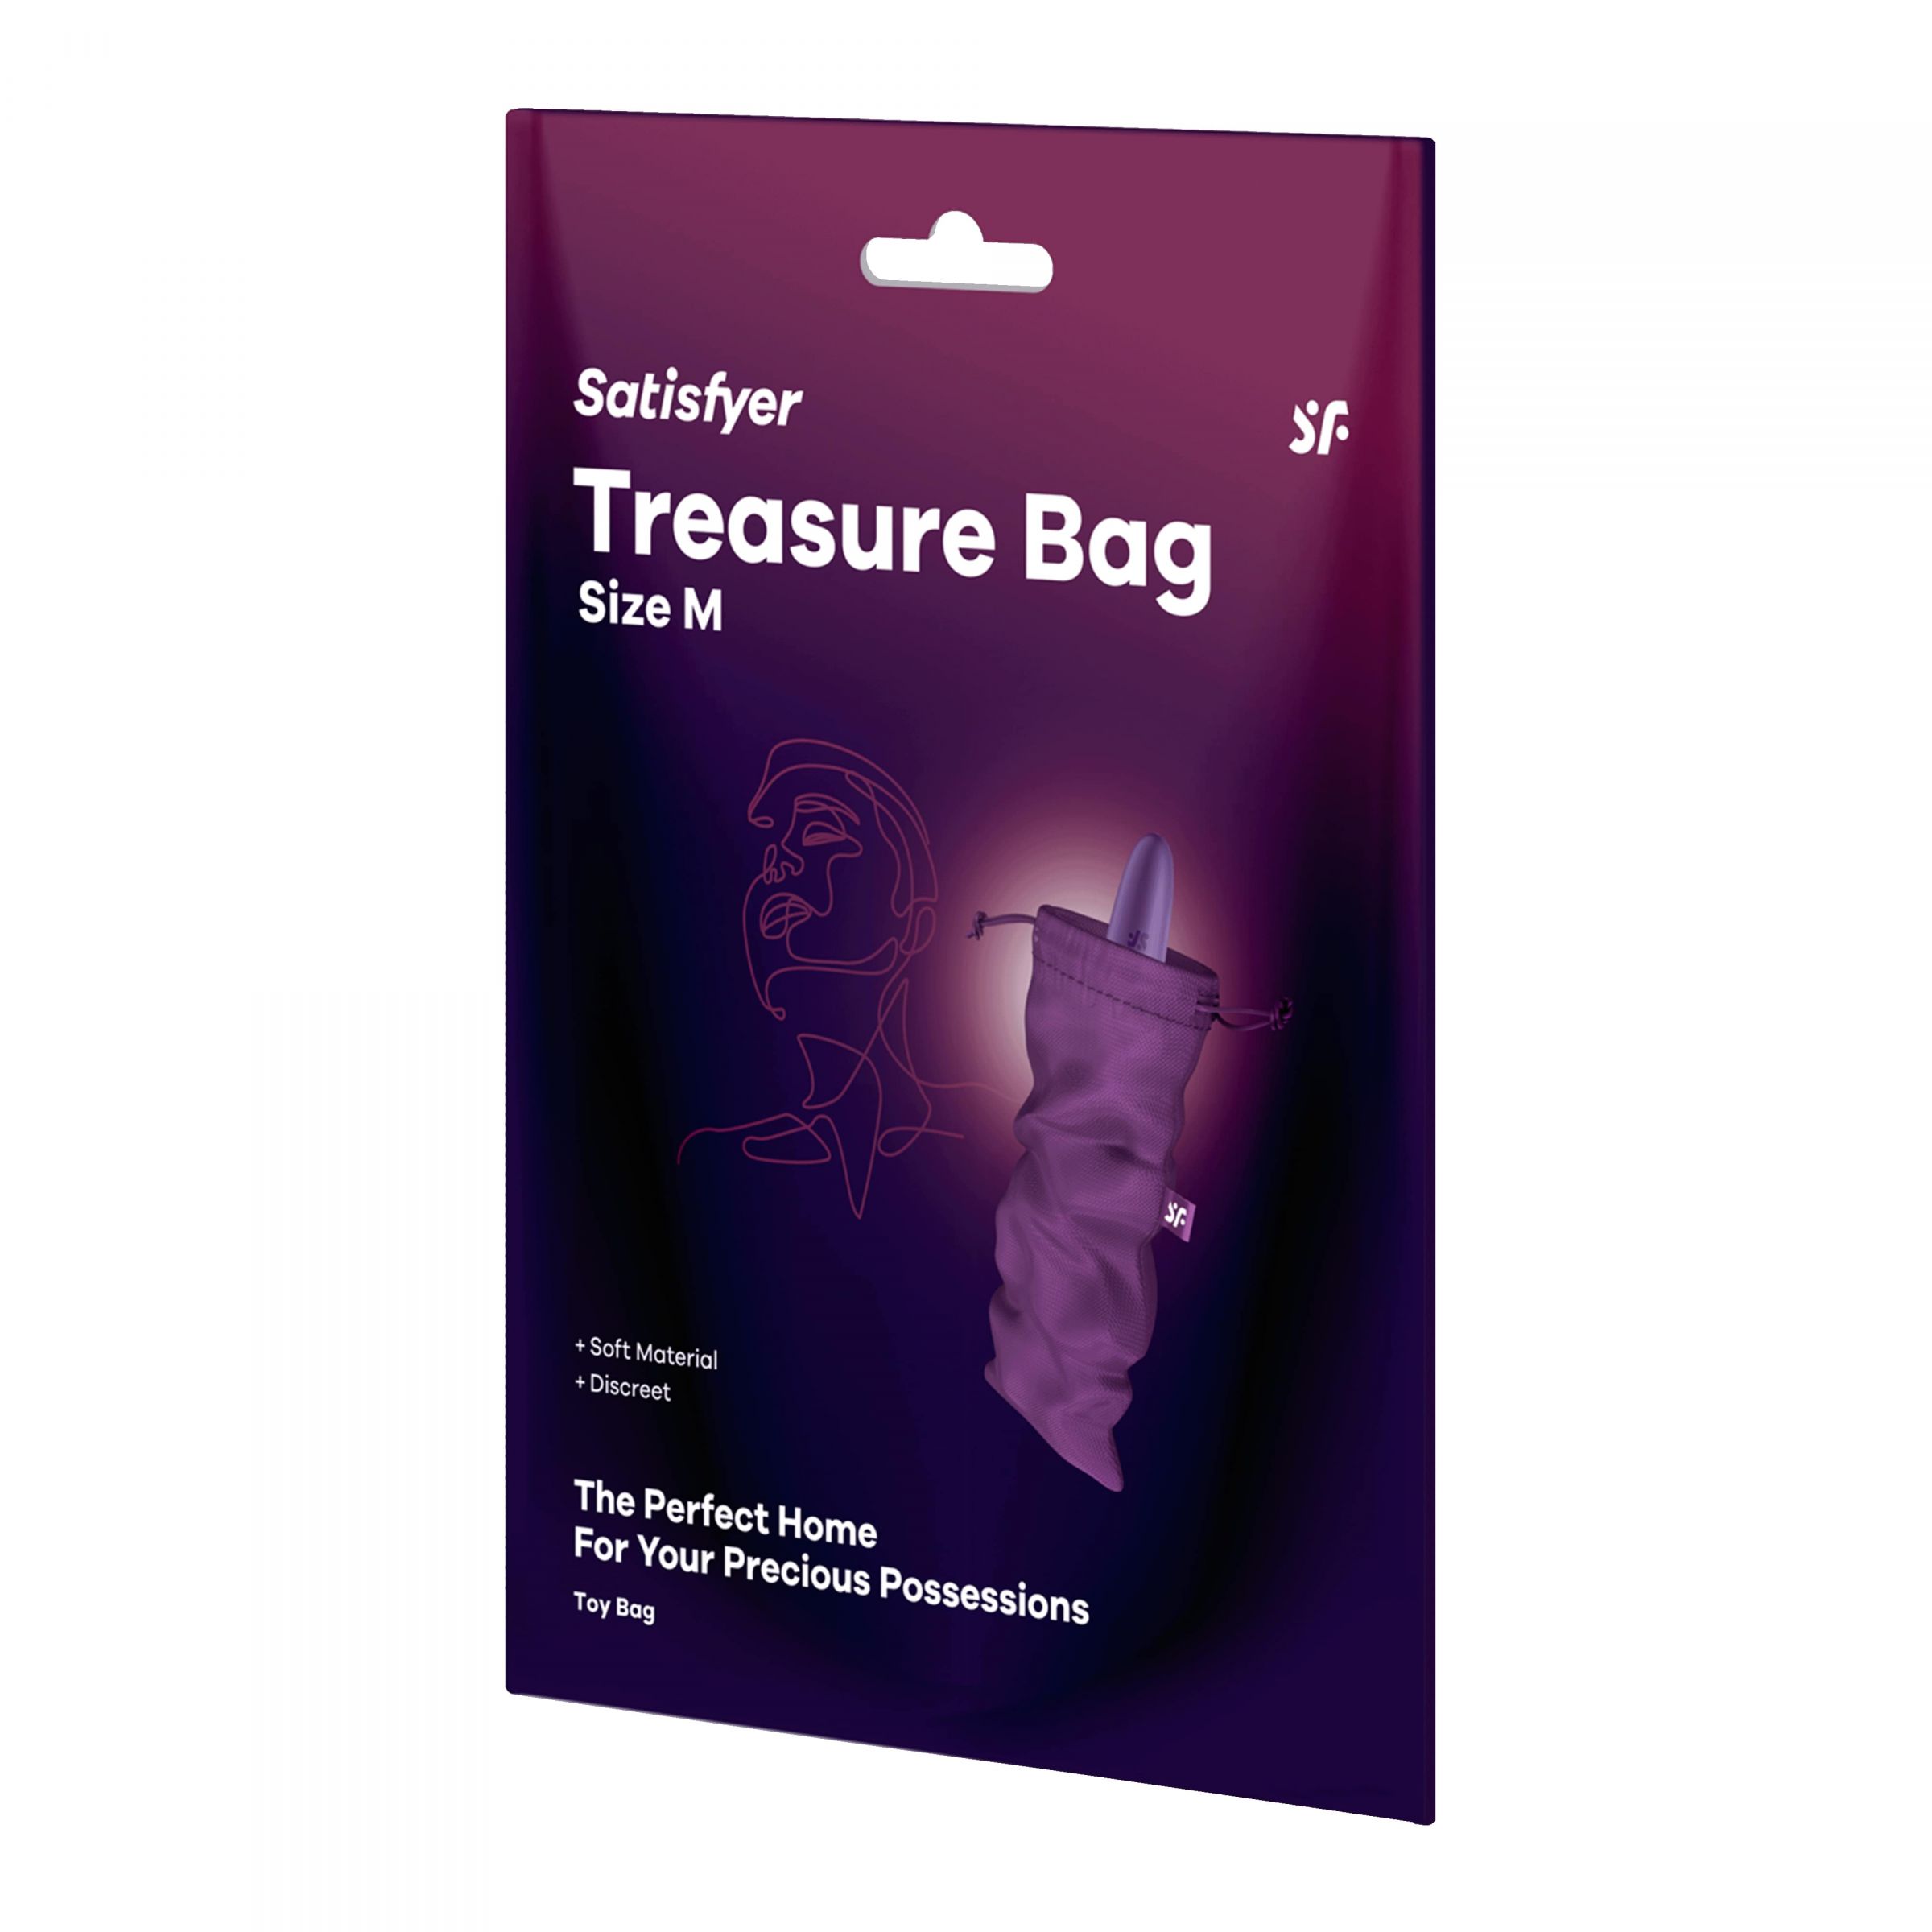 Satisfyer Treasure Bag – специализированный мешочек для хранения девайсов. Данный мешочек сделан из прочного материала, который долго и качественно прослужит вложенным в него изделиям. Материал: нейлон, полиэстер, полипропилен. Размеры - 24х12 см.